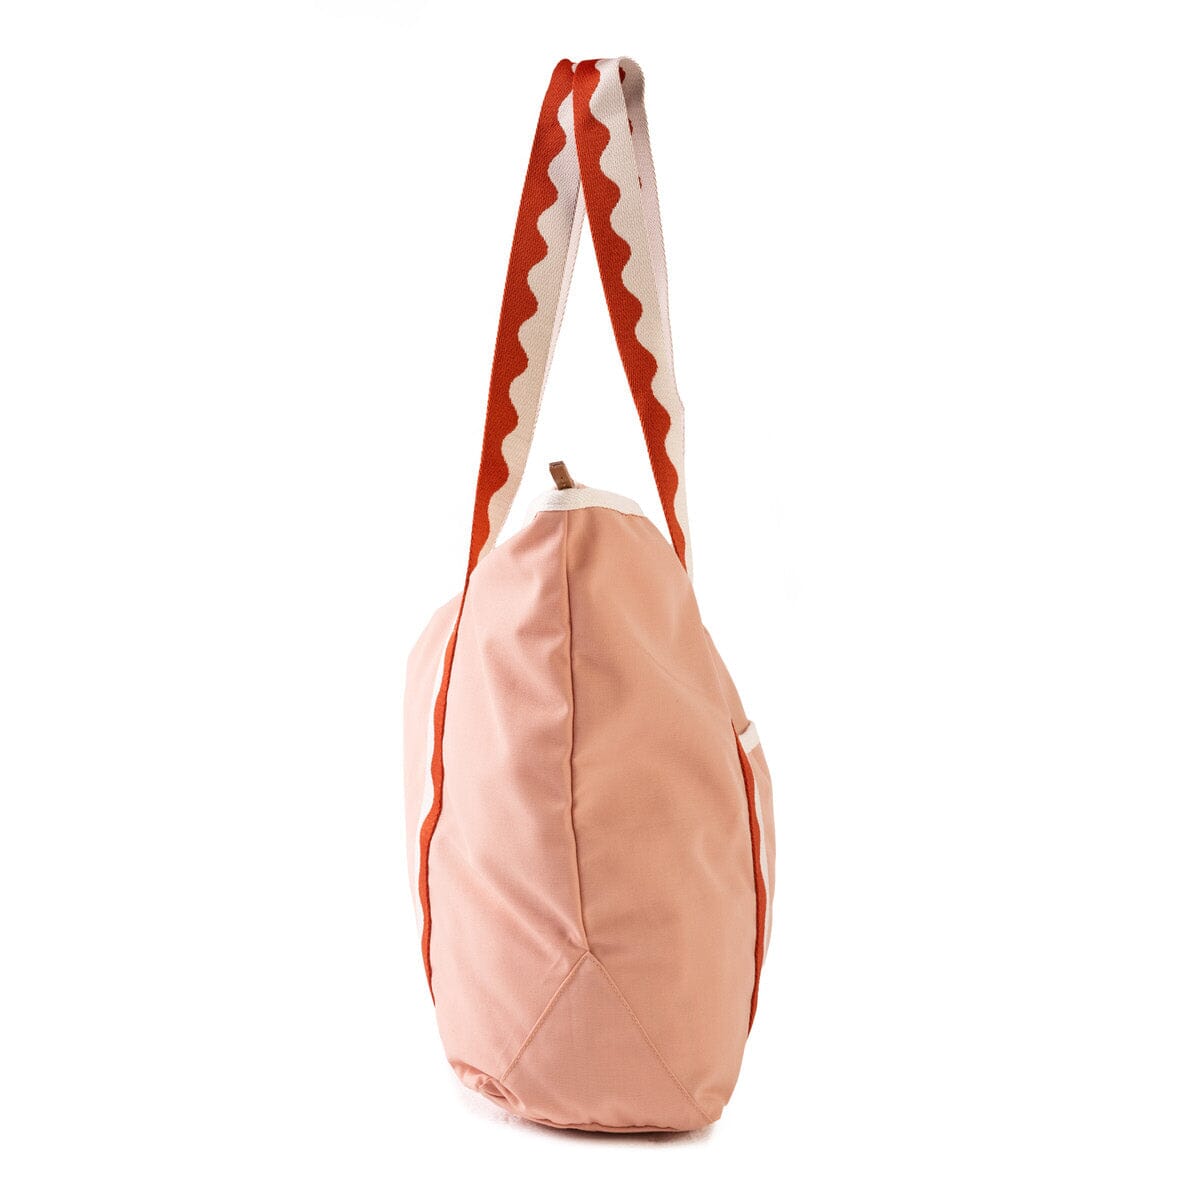 The Beach Bag - Rivie Pink Beach Bag Business & Pleasure Co Aus 